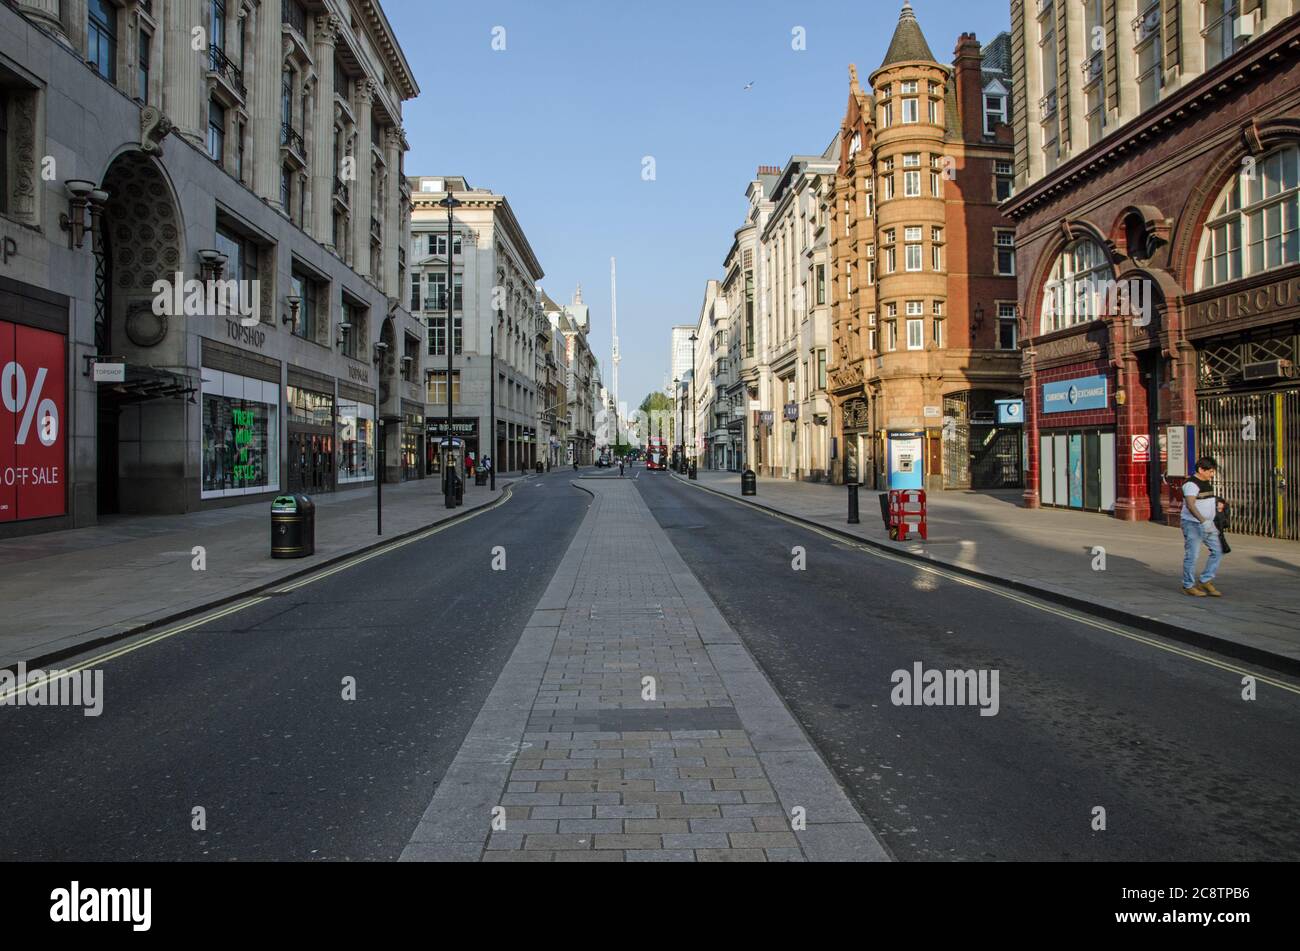 Londres, Royaume-Uni - 24 avril 2020 : une Oxford Street presque déserte dans un après-midi ensoleillé au printemps, pendant le confinement de la COVID19. Seulement quelques piétons et véh Banque D'Images